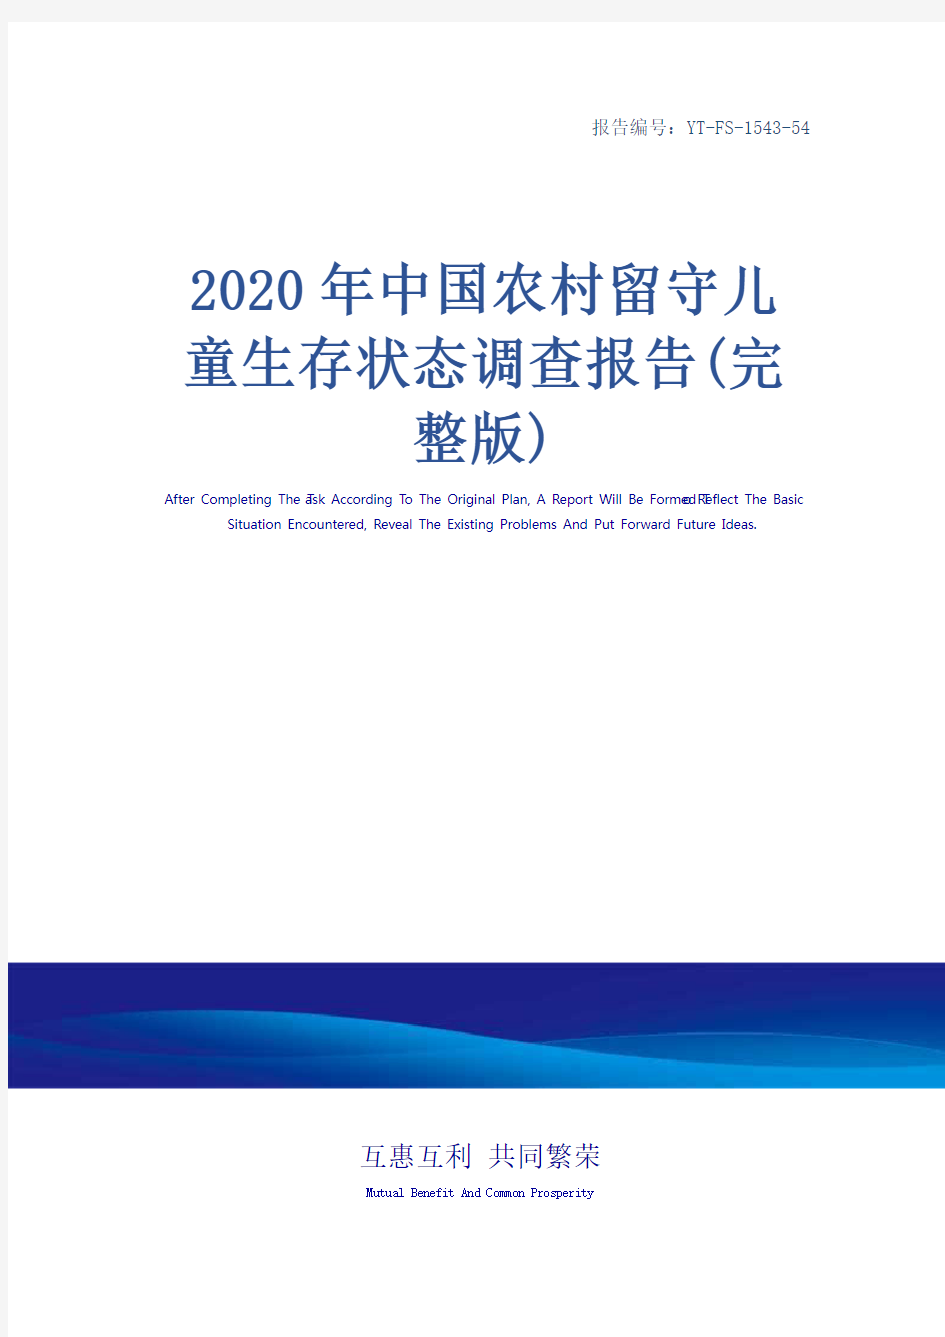 2020年中国农村留守儿童生存状态调查报告(完整版)